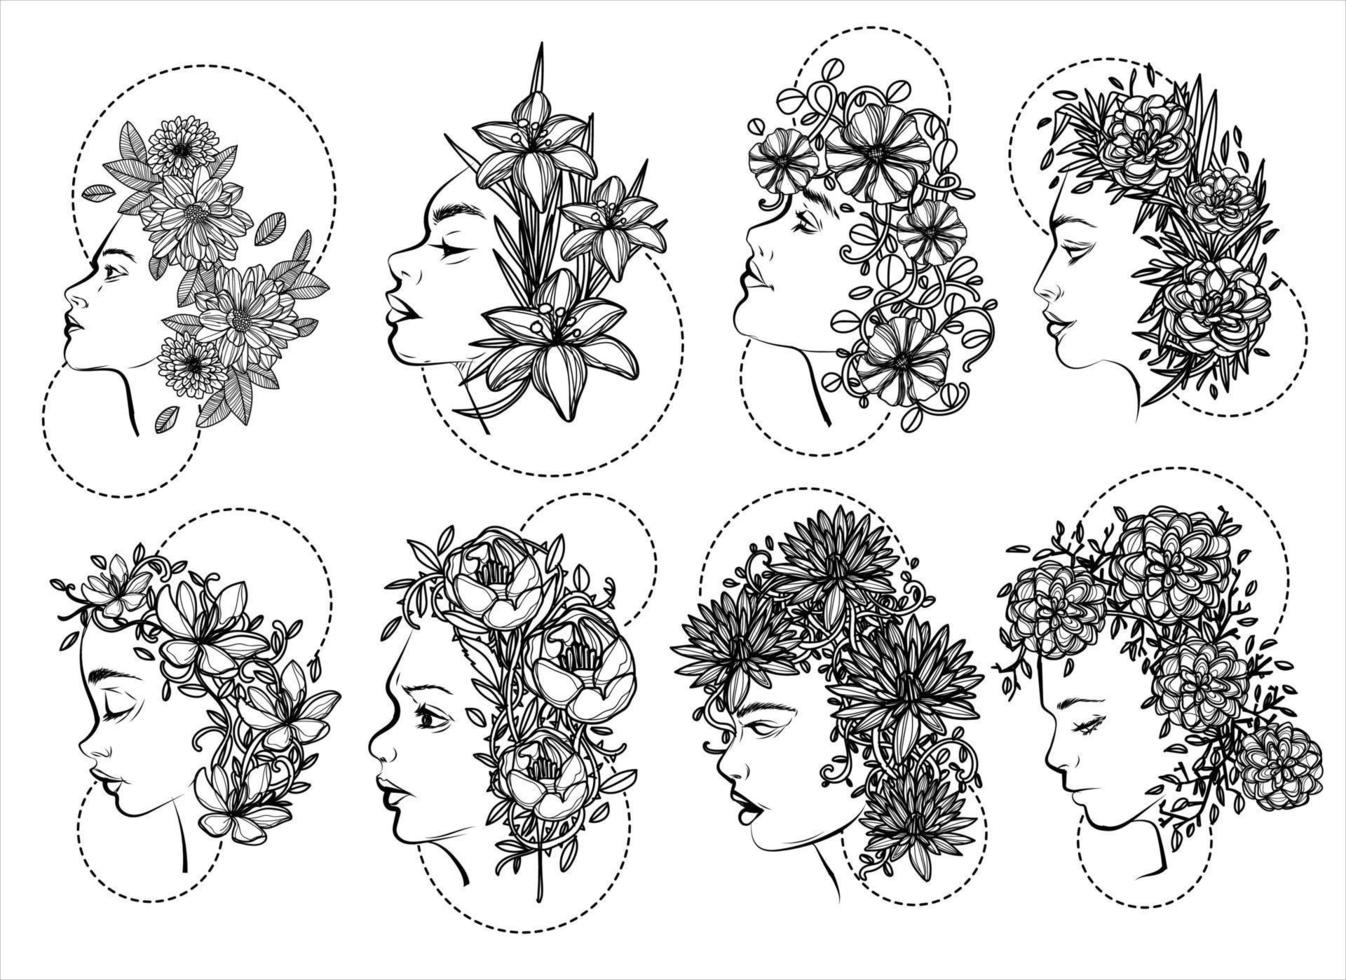 arte del tatuaje mujeres y flores dibujo a mano vector